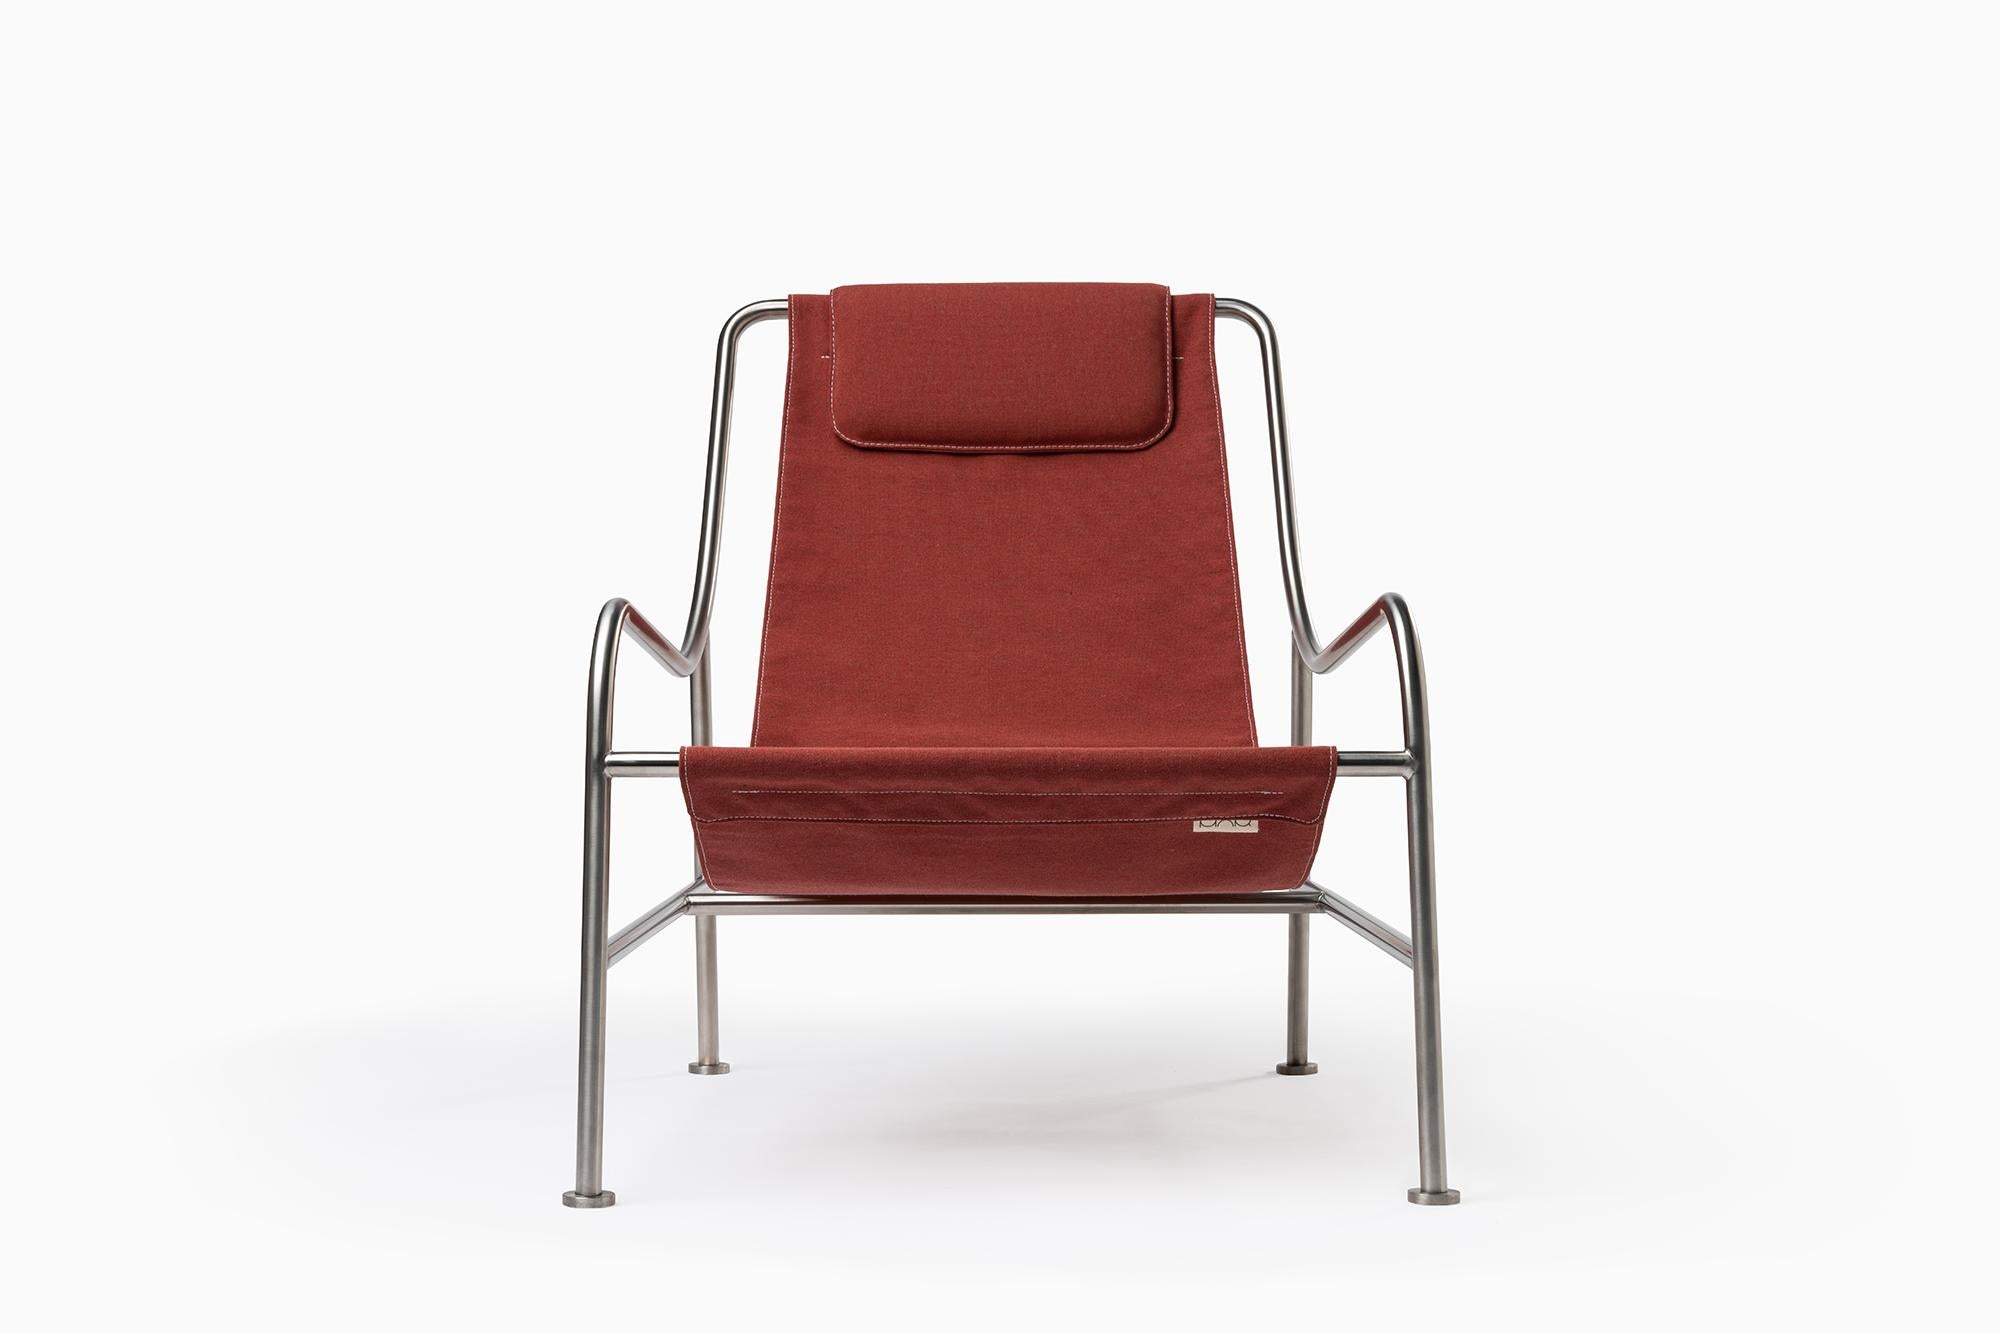 Die Outdoor-Variante des LISBOA-Sessels lädt dazu ein, sich in der Sonne zu entspannen und die langen Tage und lauen Sommernächte zu genießen. 

Der für das Leben im Freien konzipierte Stuhl ist dank der offenen Struktur aus Edelstahlrohren sehr